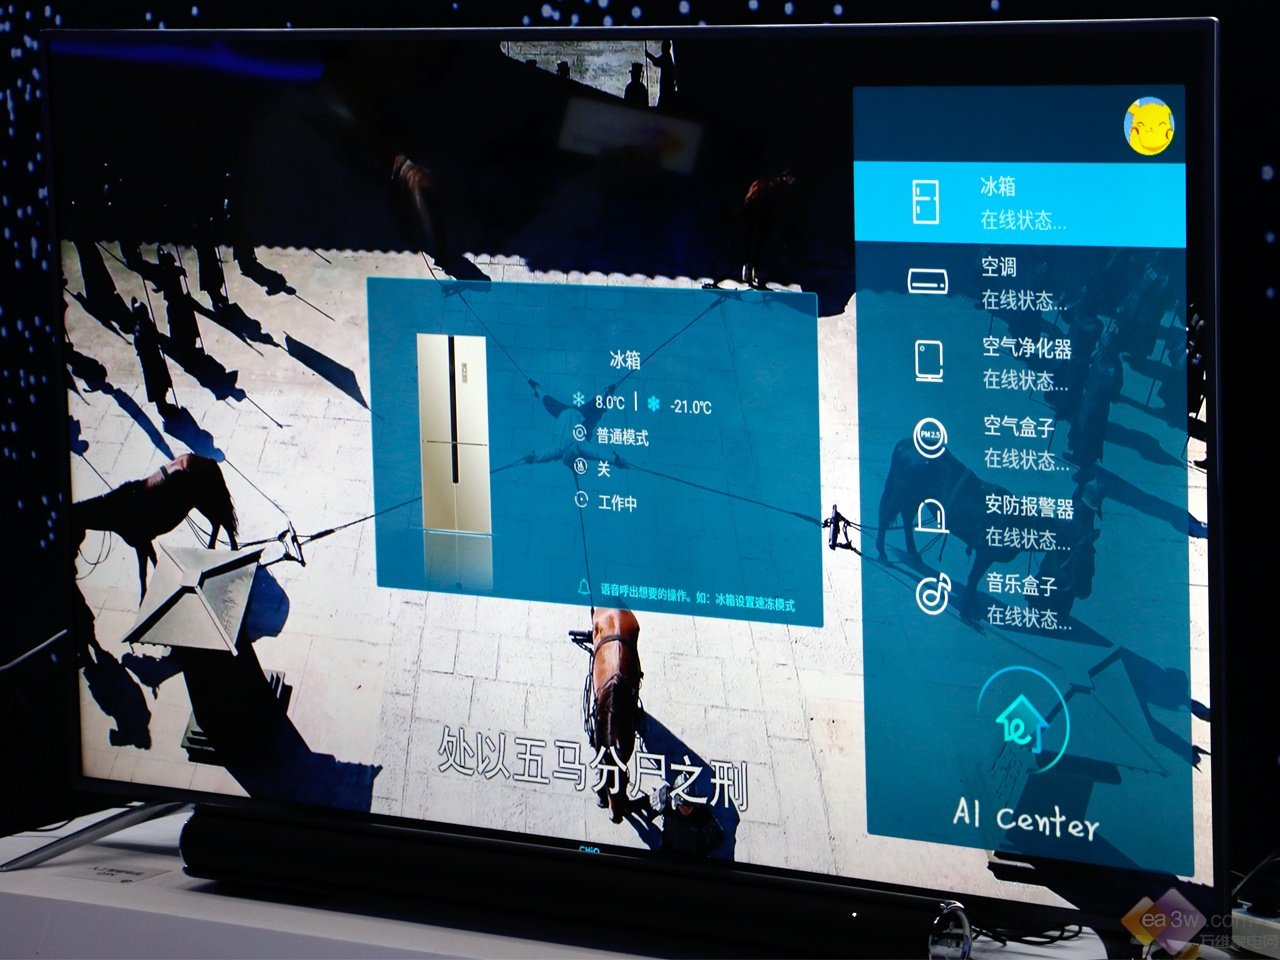 长虹CHIQ 电视55Q5N详细测评：玩转人工智能 语音即可召唤